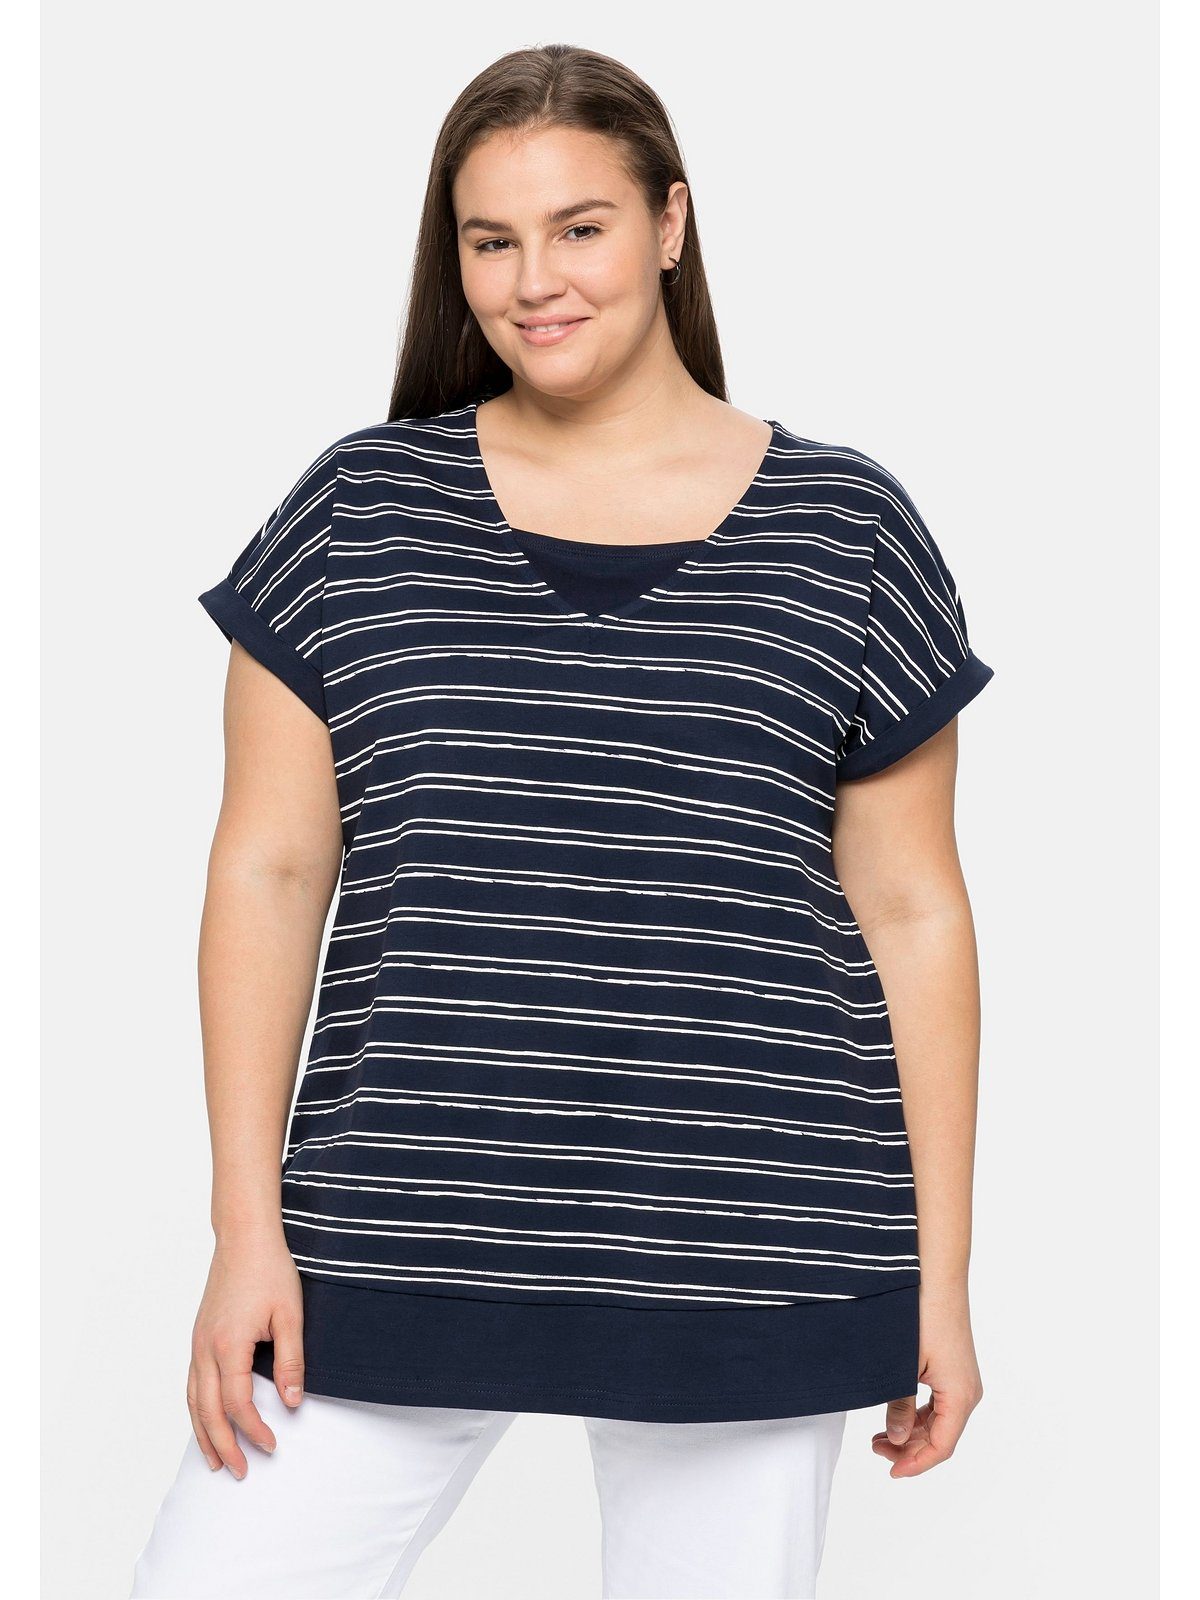 Vortrefflichkeit Sheego T-Shirt Große reiner im Größen aus Lagenlook, marine-weiß Baumwolle